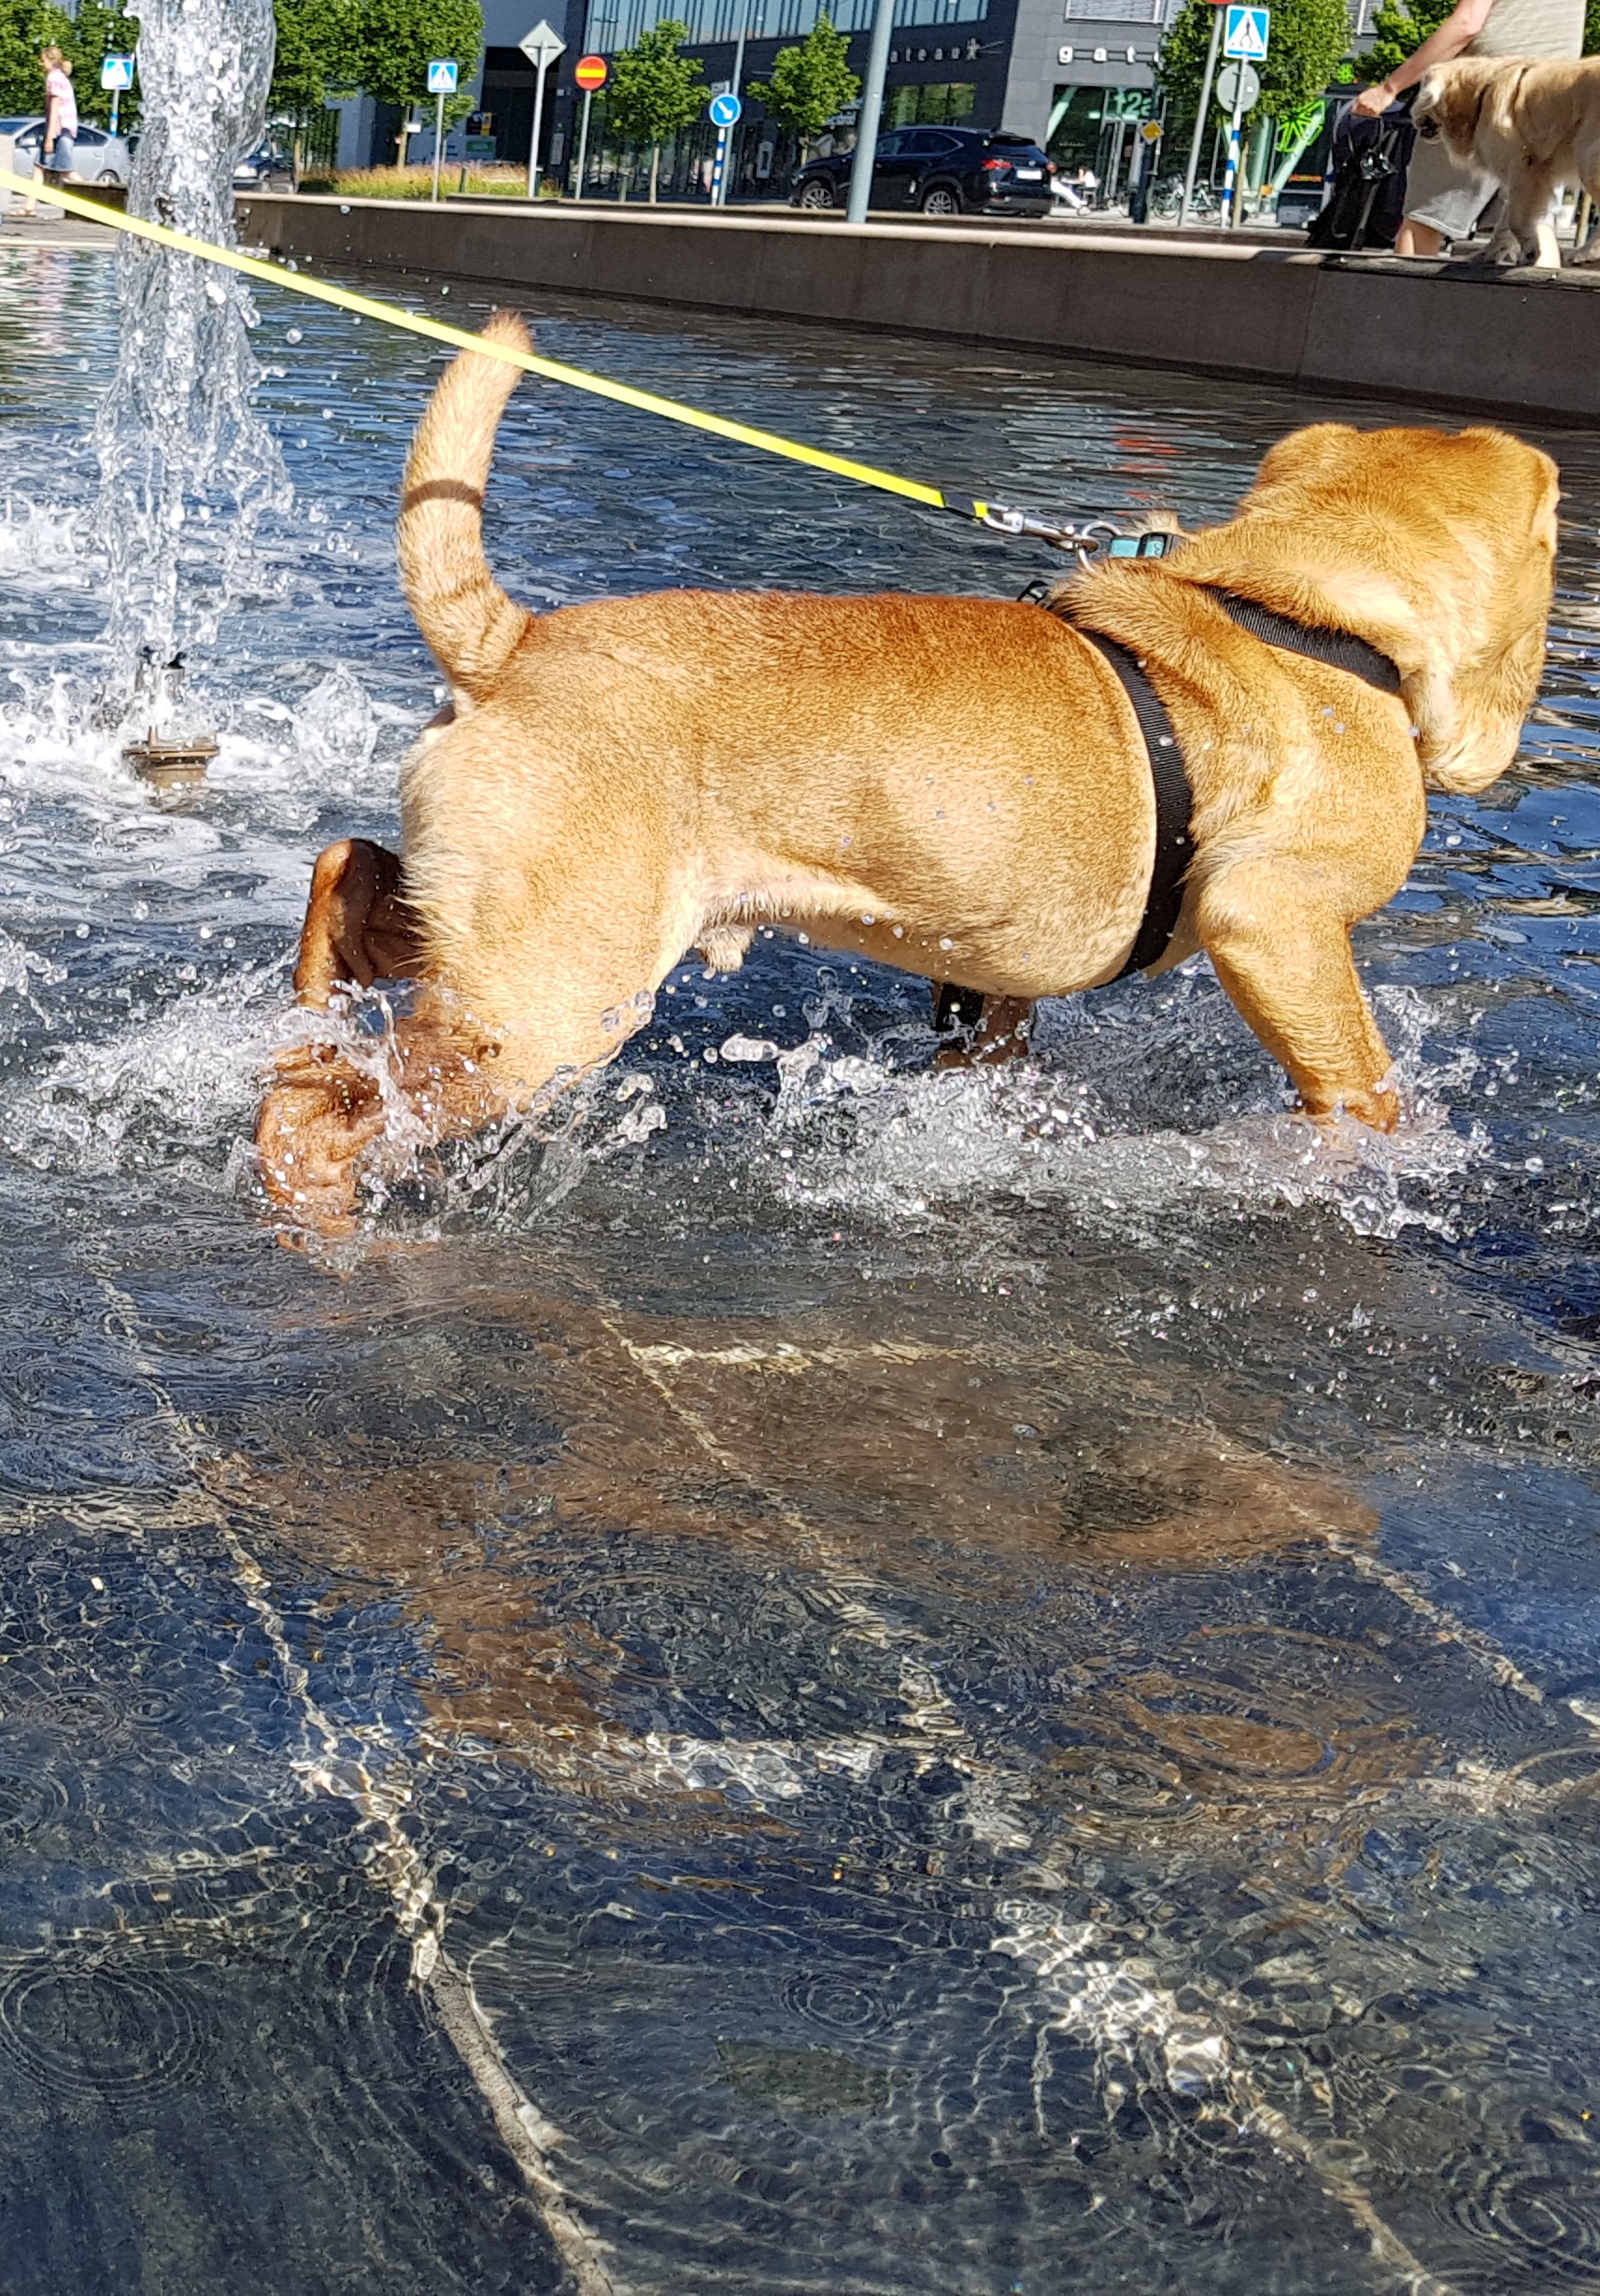 Heerlijk zwemmen is niet alleen verkoelend, maar kan je hond ook oververhitten! _1